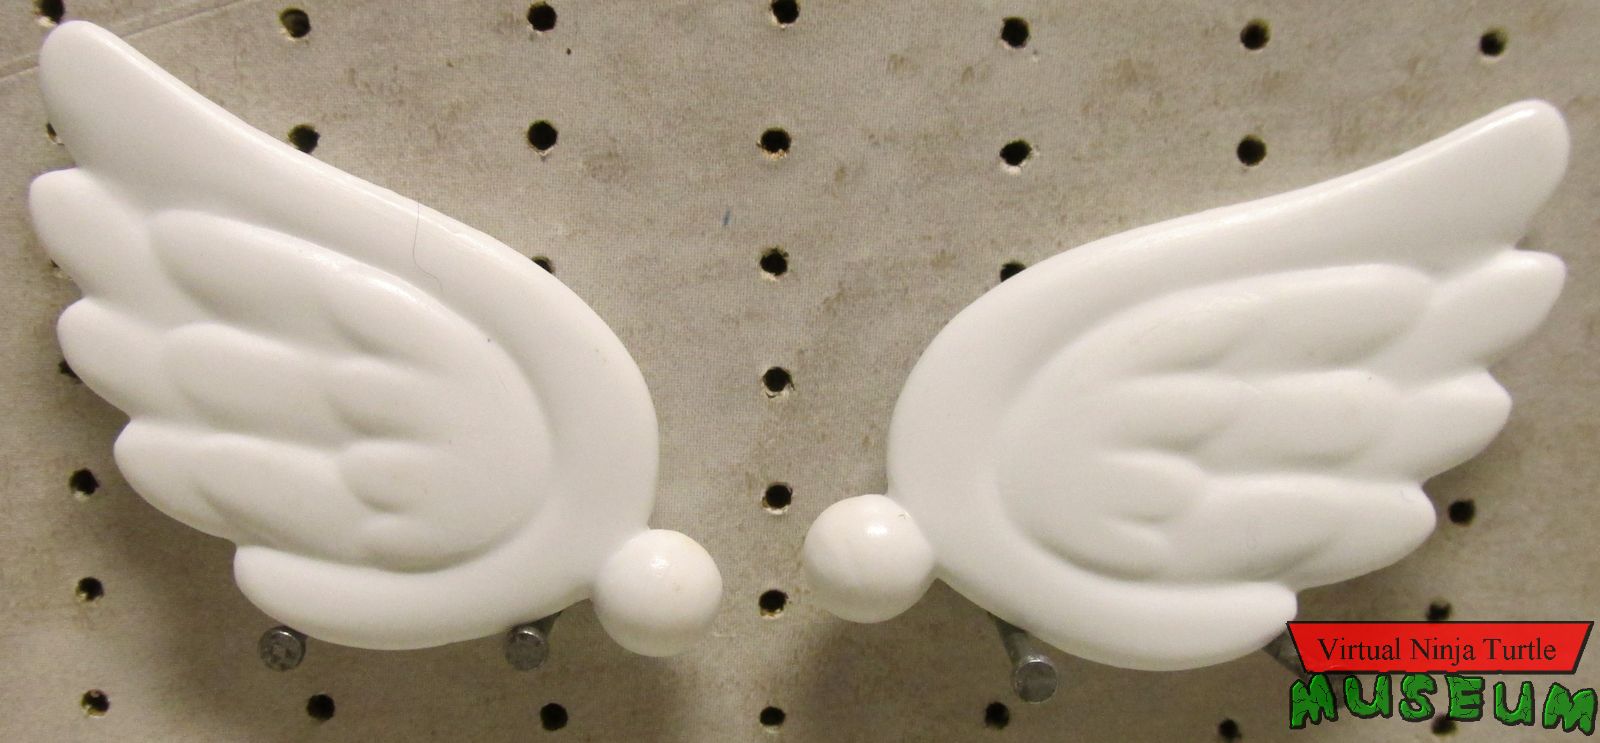 Koopa Paratrooper's wing accessories